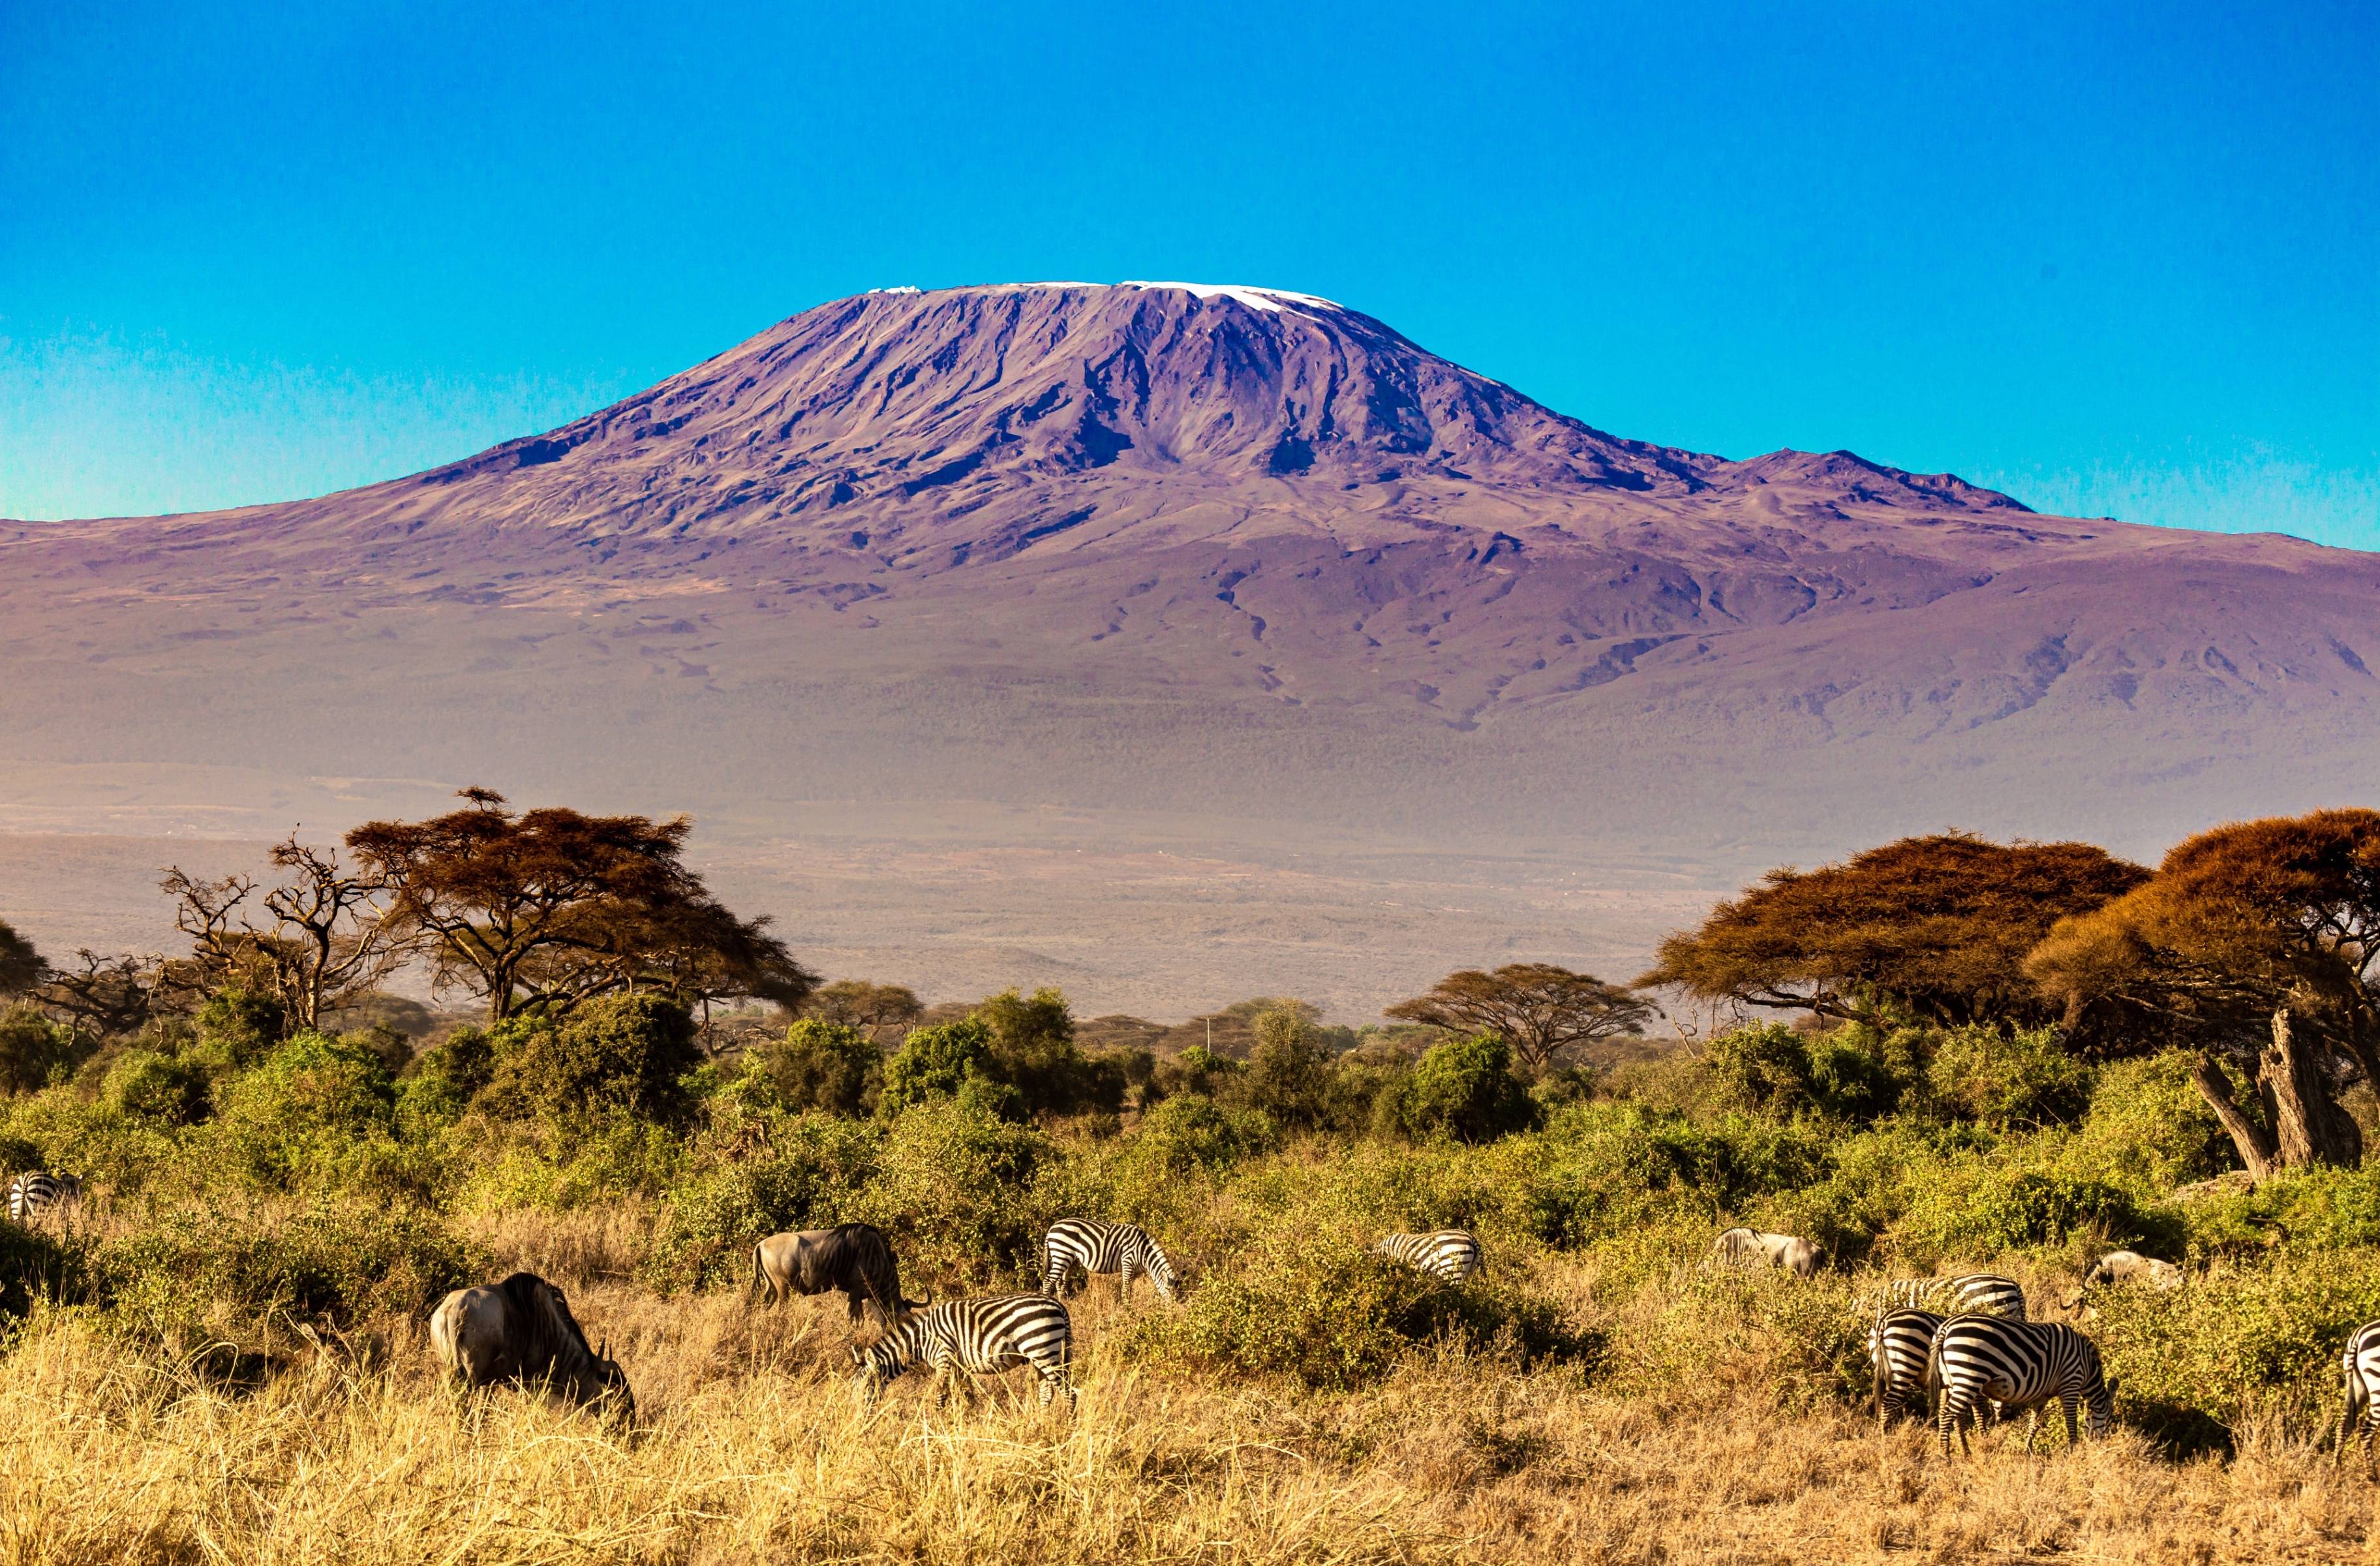 A la tierra de la fauna salvaje, las aves raras y las impresionantes vistas del monte Kilimanjaro